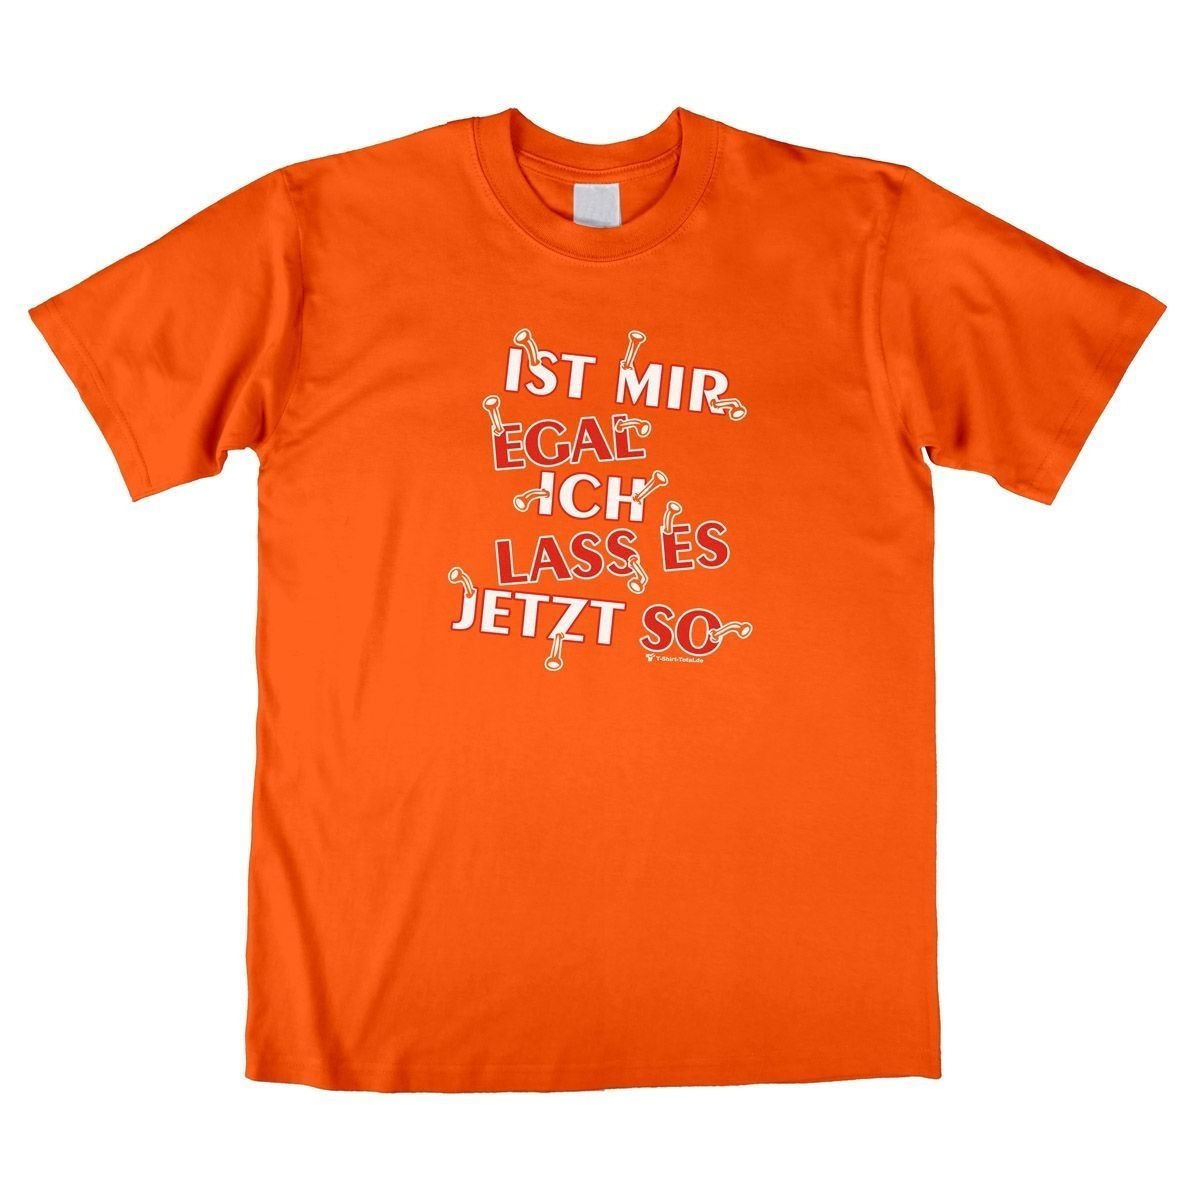 Lass es jetzt so Unisex T-Shirt orange Medium